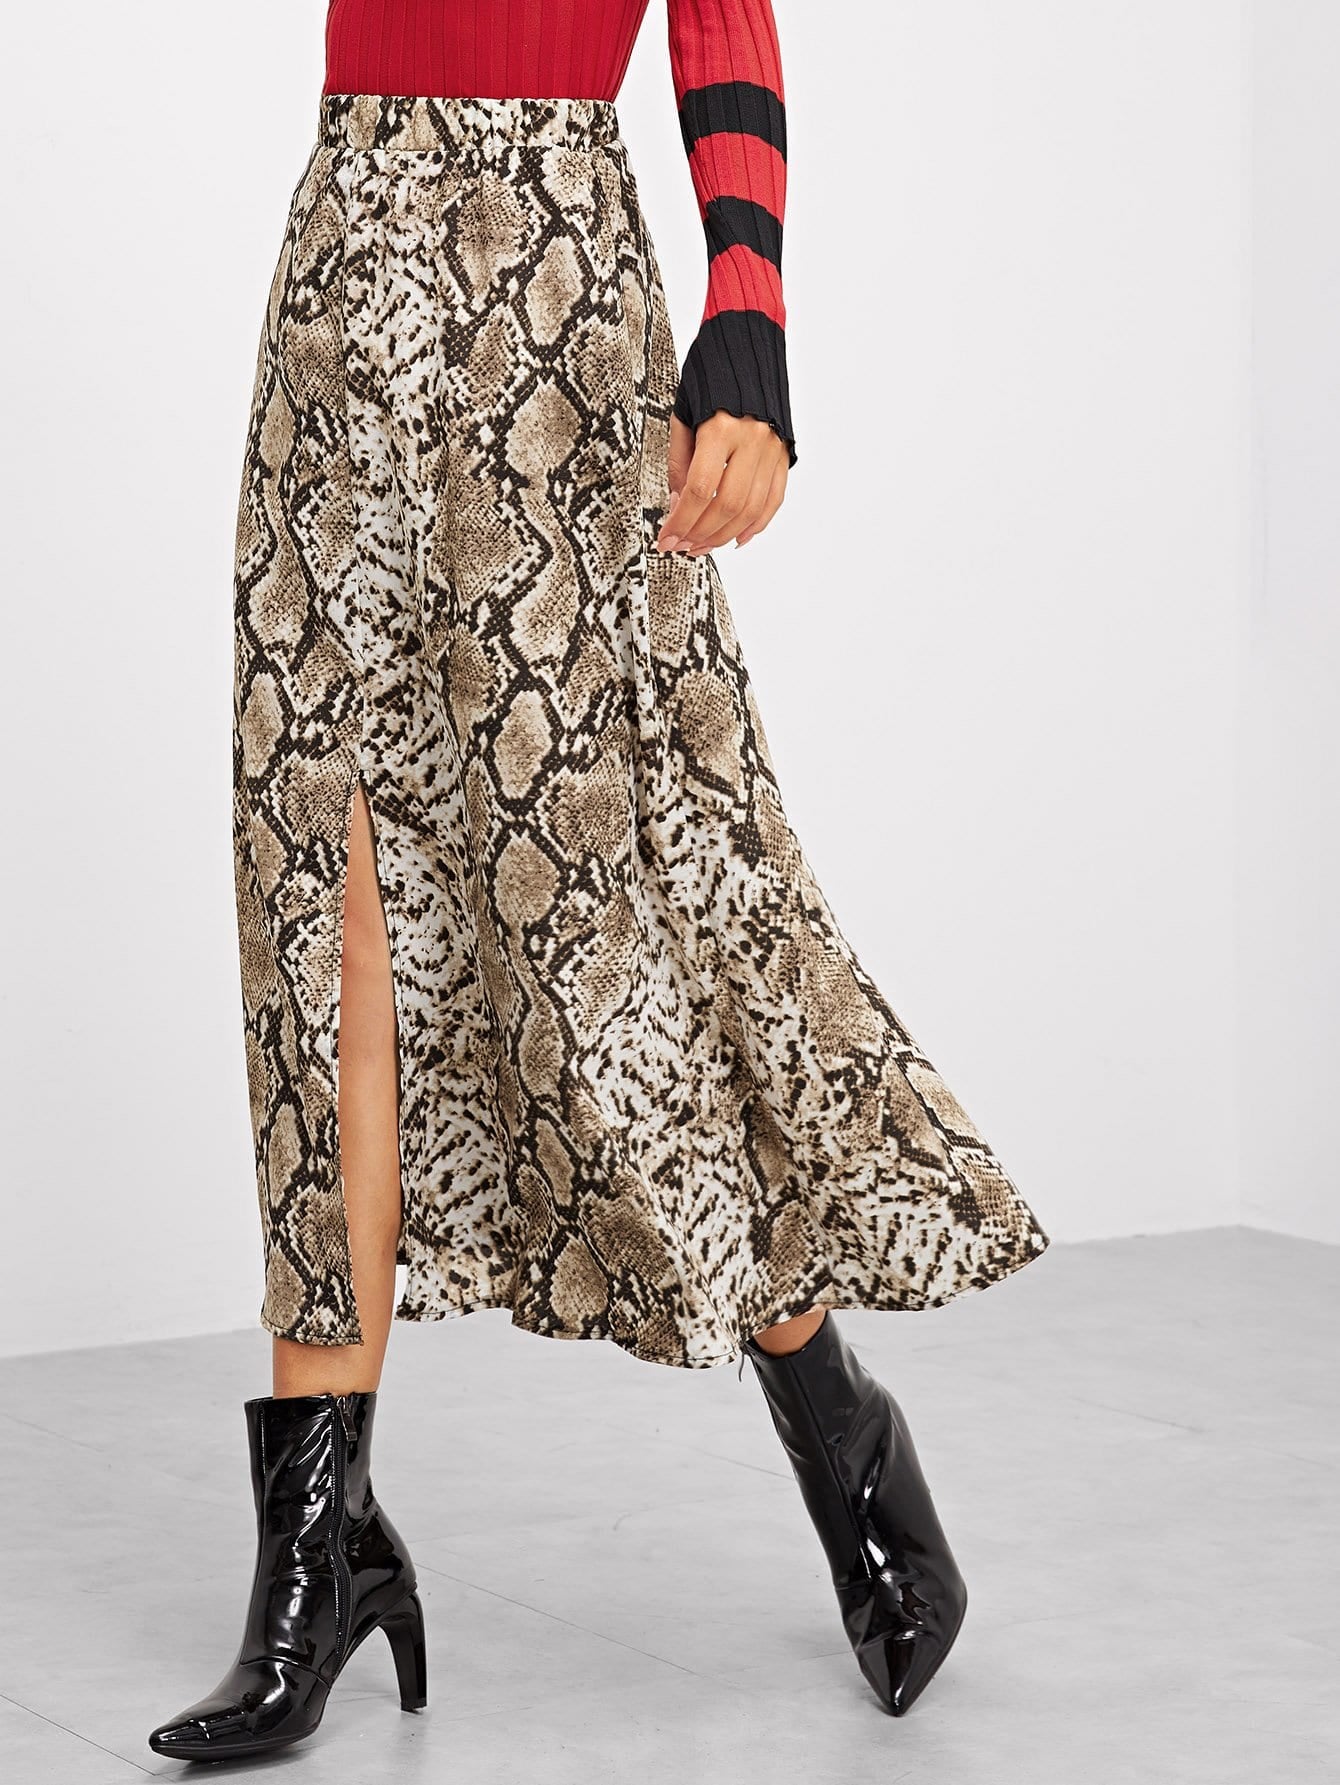 Queen Letizia's Zara Snakeskin Skirt 